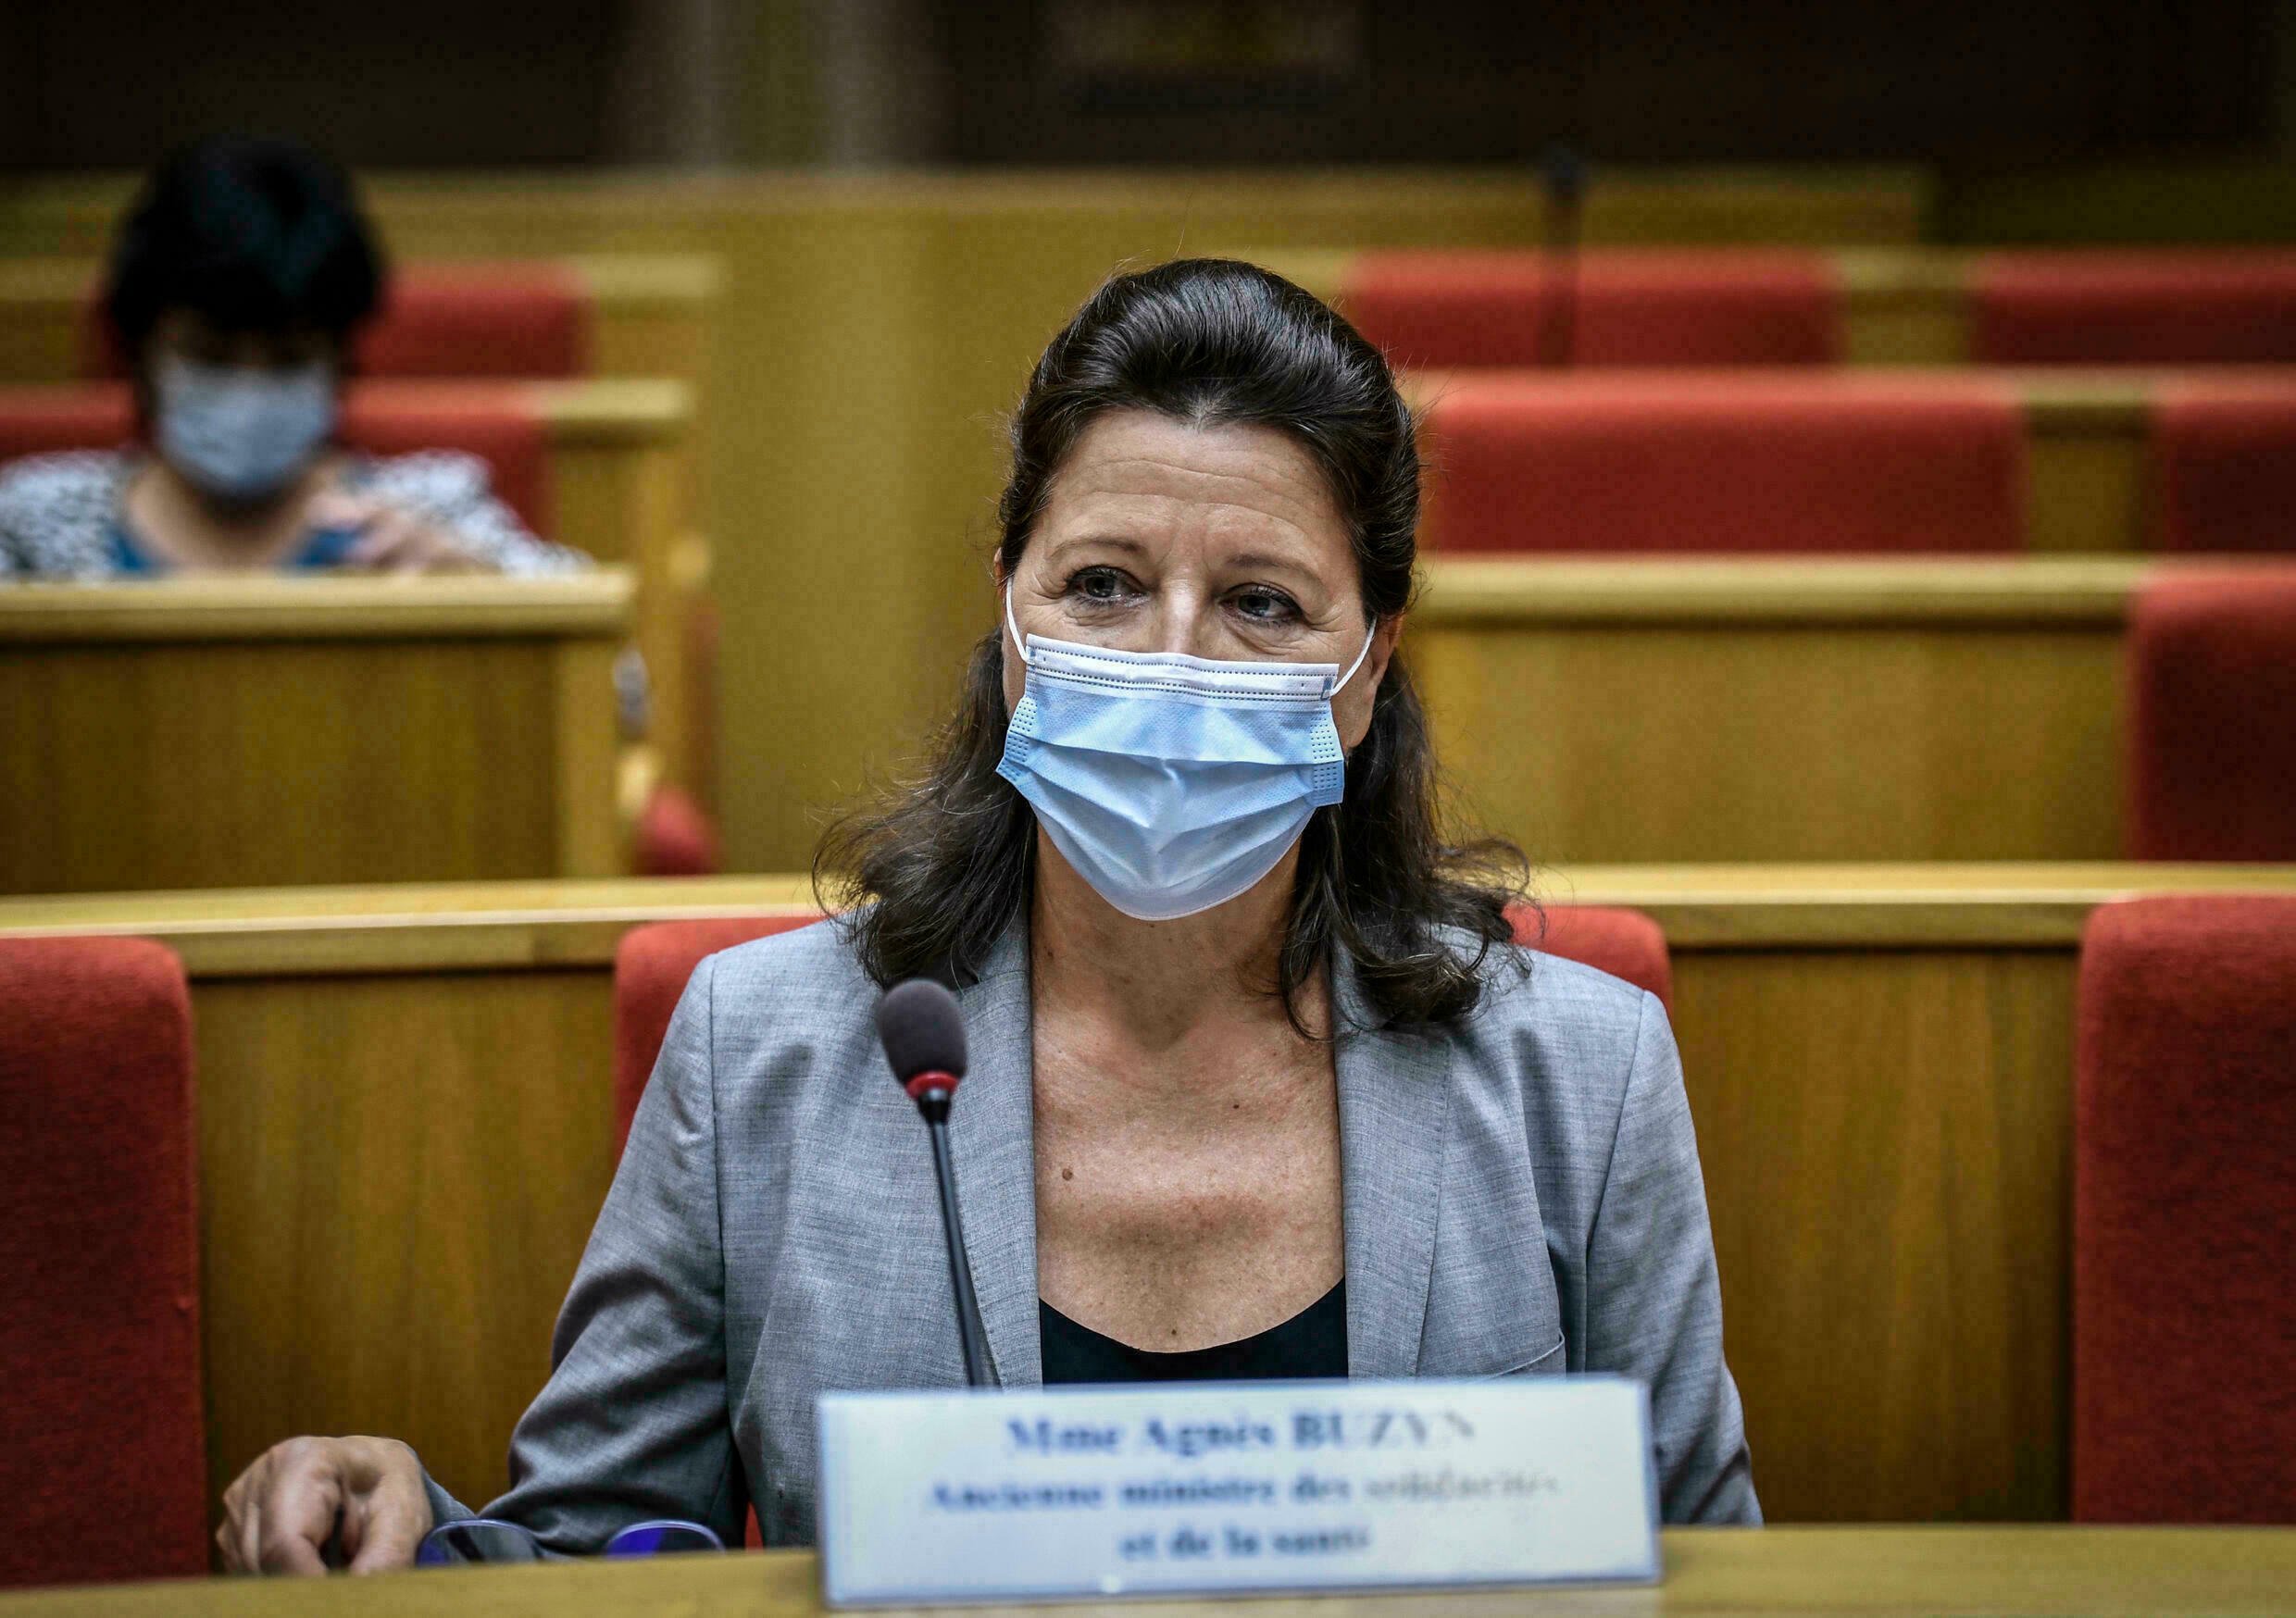  Fost ministru al sănătăţii din Franţa, inculpat în ancheta privind gestionarea pandemiei